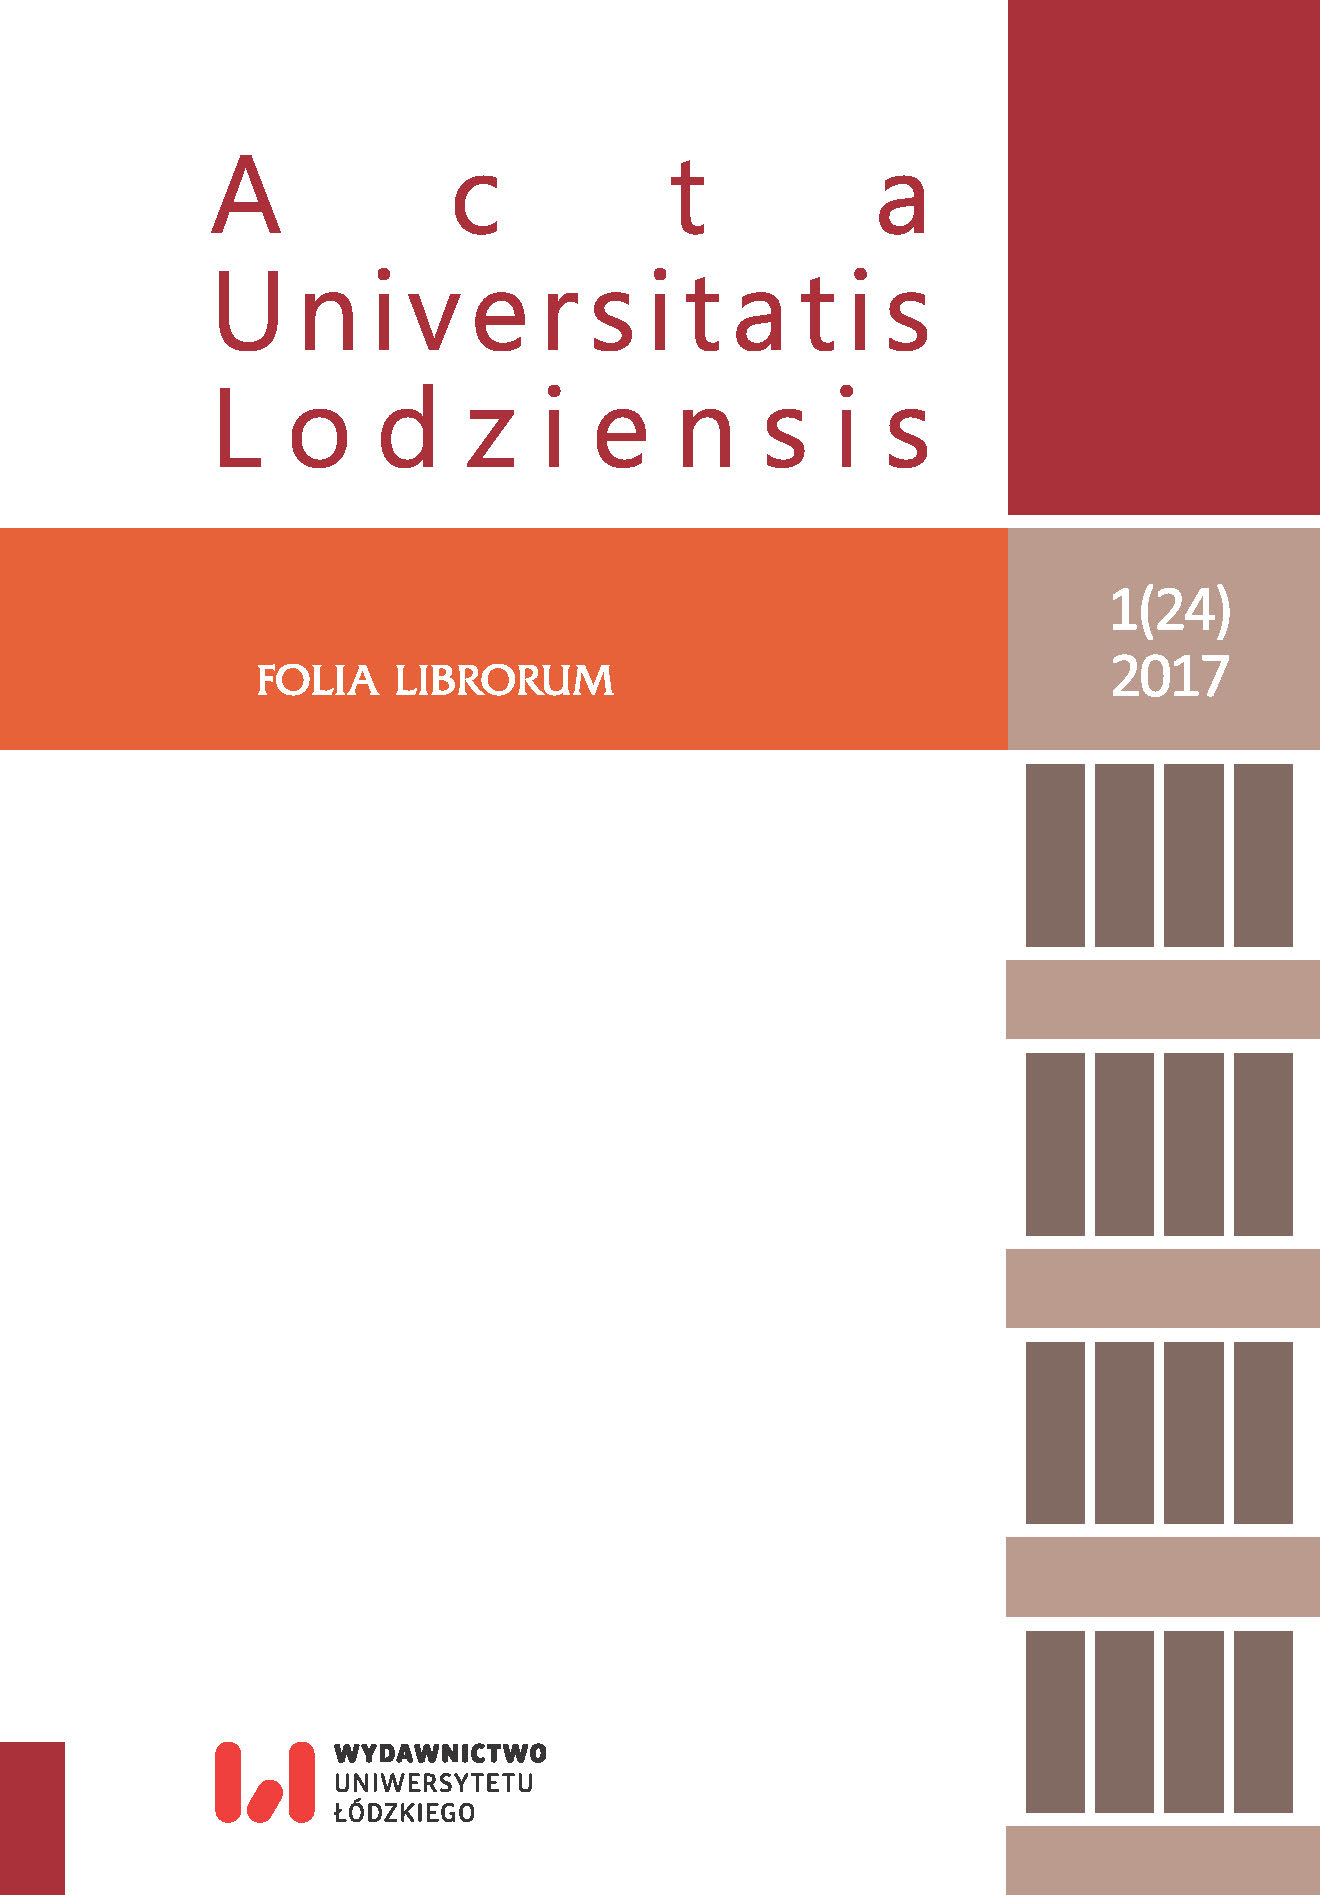 „Czasopisma naukowe w bibliotekach – zmierzch czy świt?” (Gdańsk, 19-20 września 2016 r.)